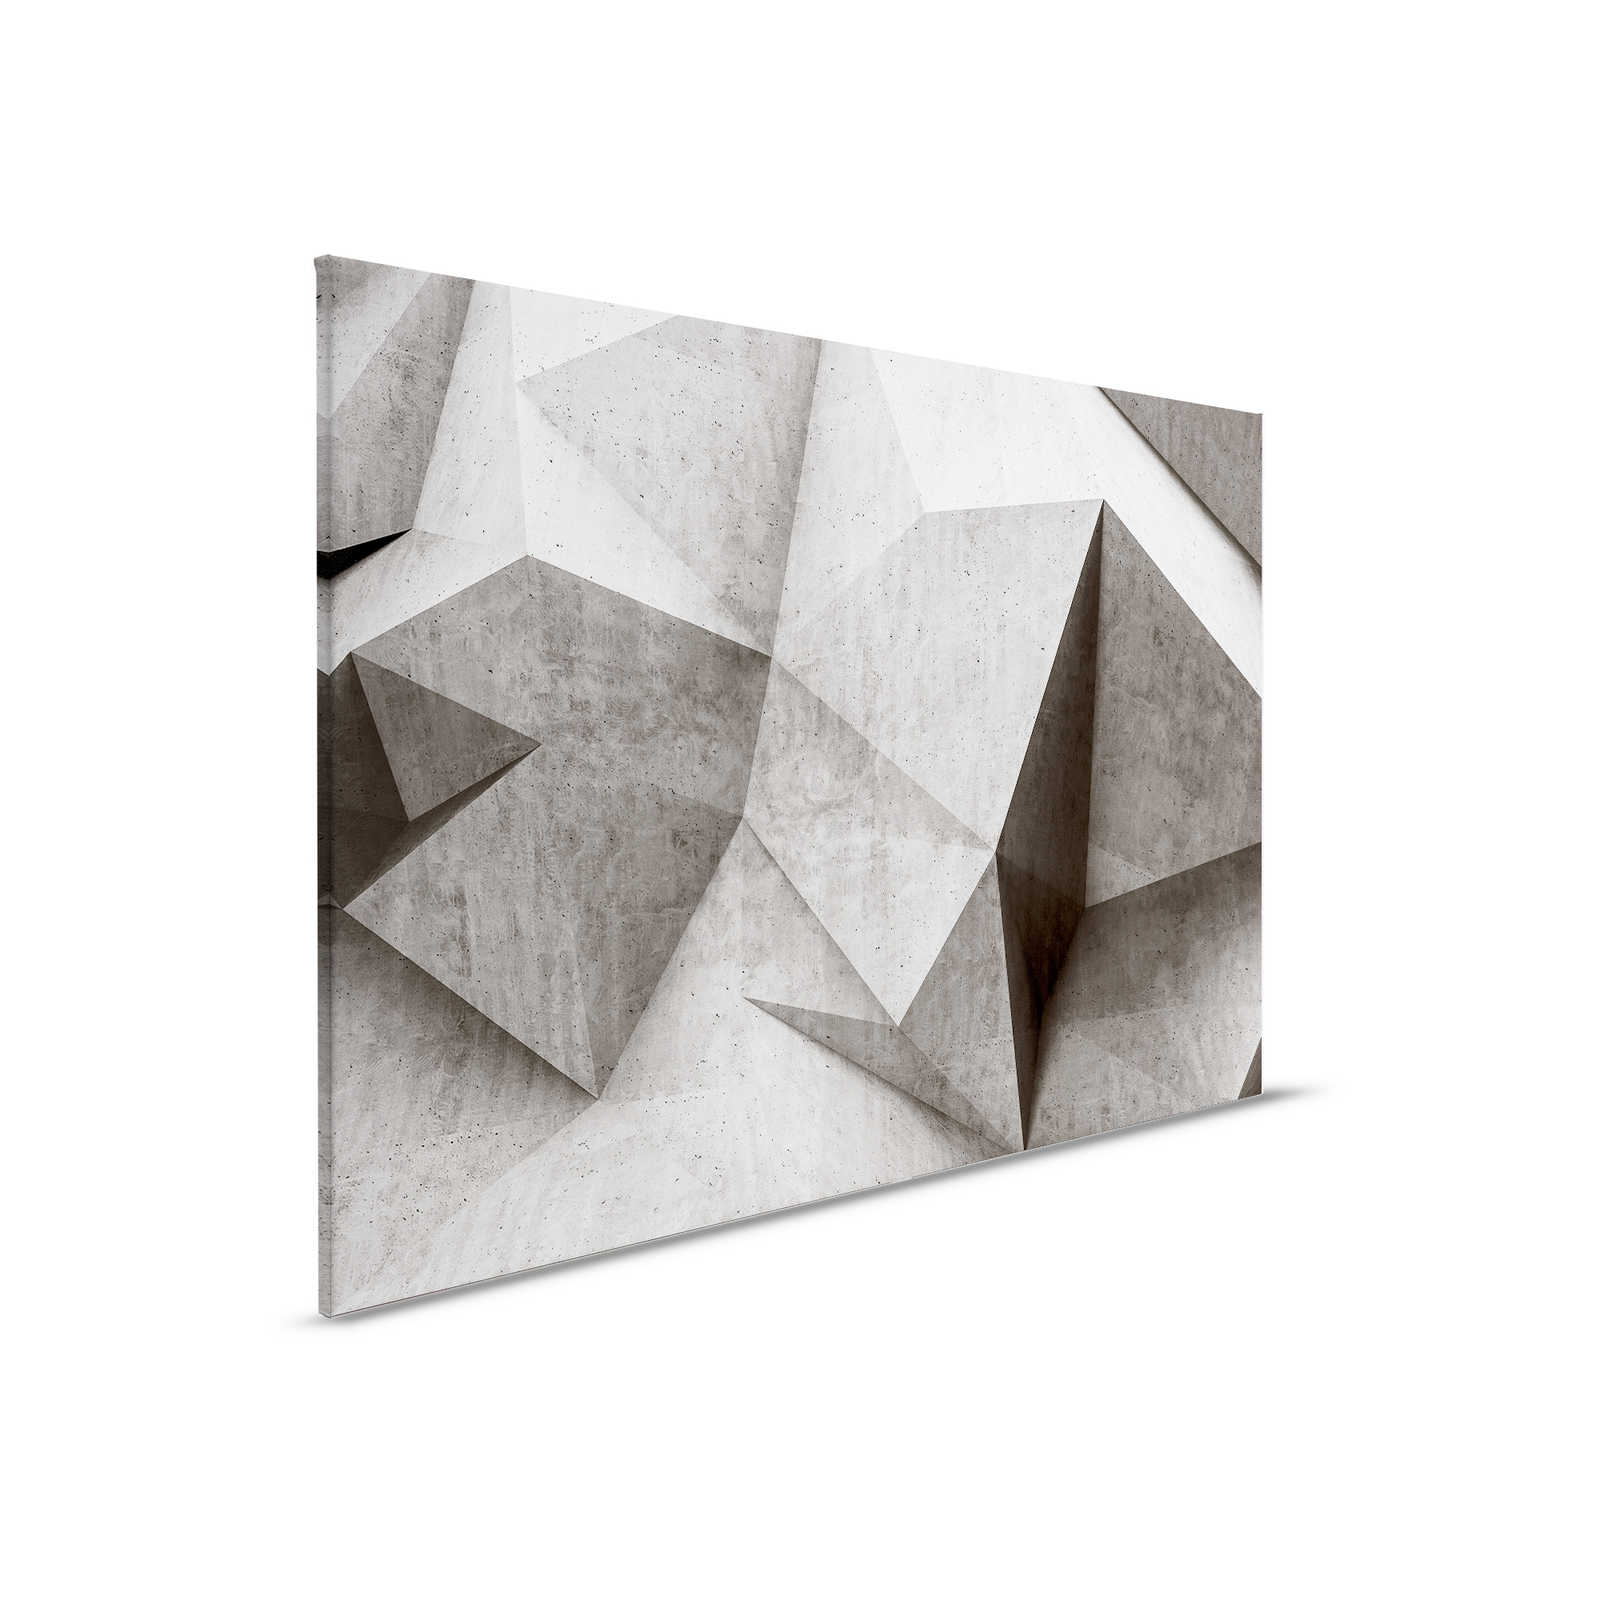 Boulder 1 - Pittura su tela con poligoni di cemento 3D - 0,90 m x 0,60 m
